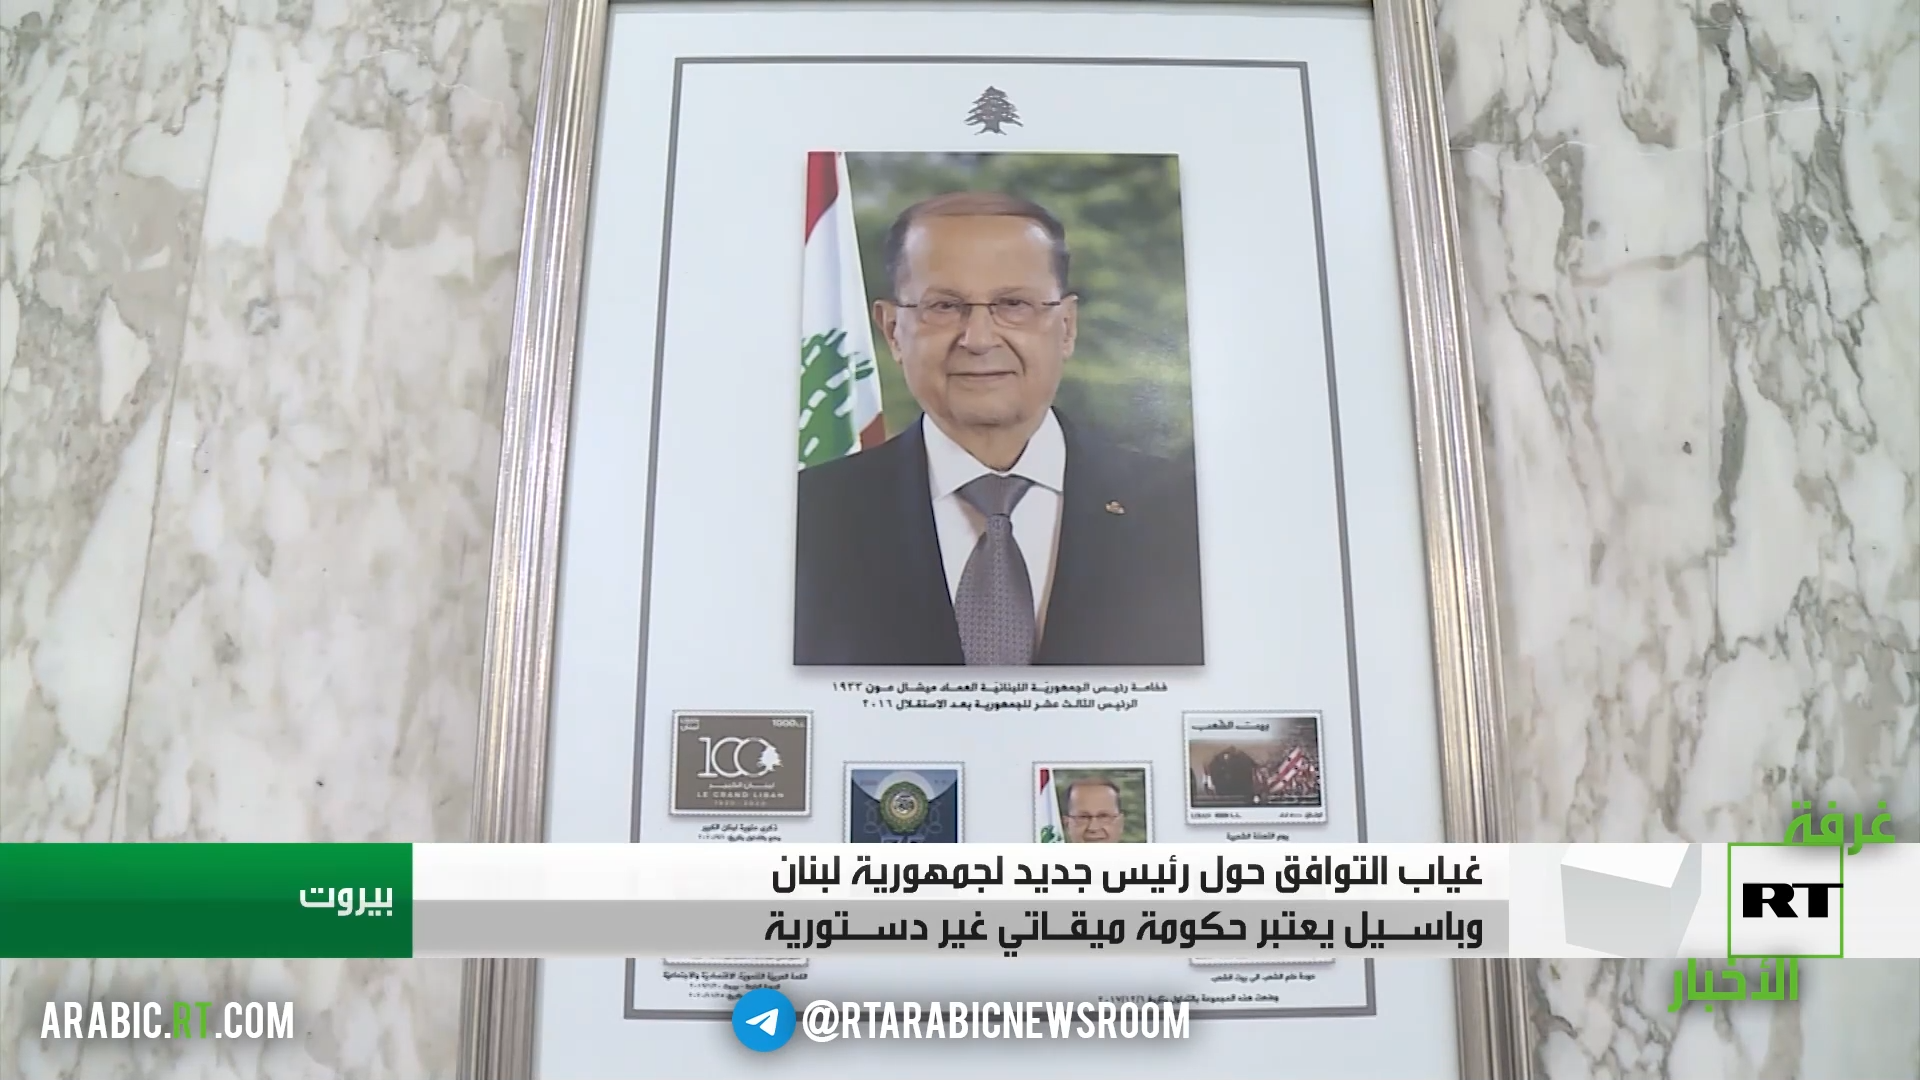 غياب التوافقات بشأن انتخاب رئيس لبناني